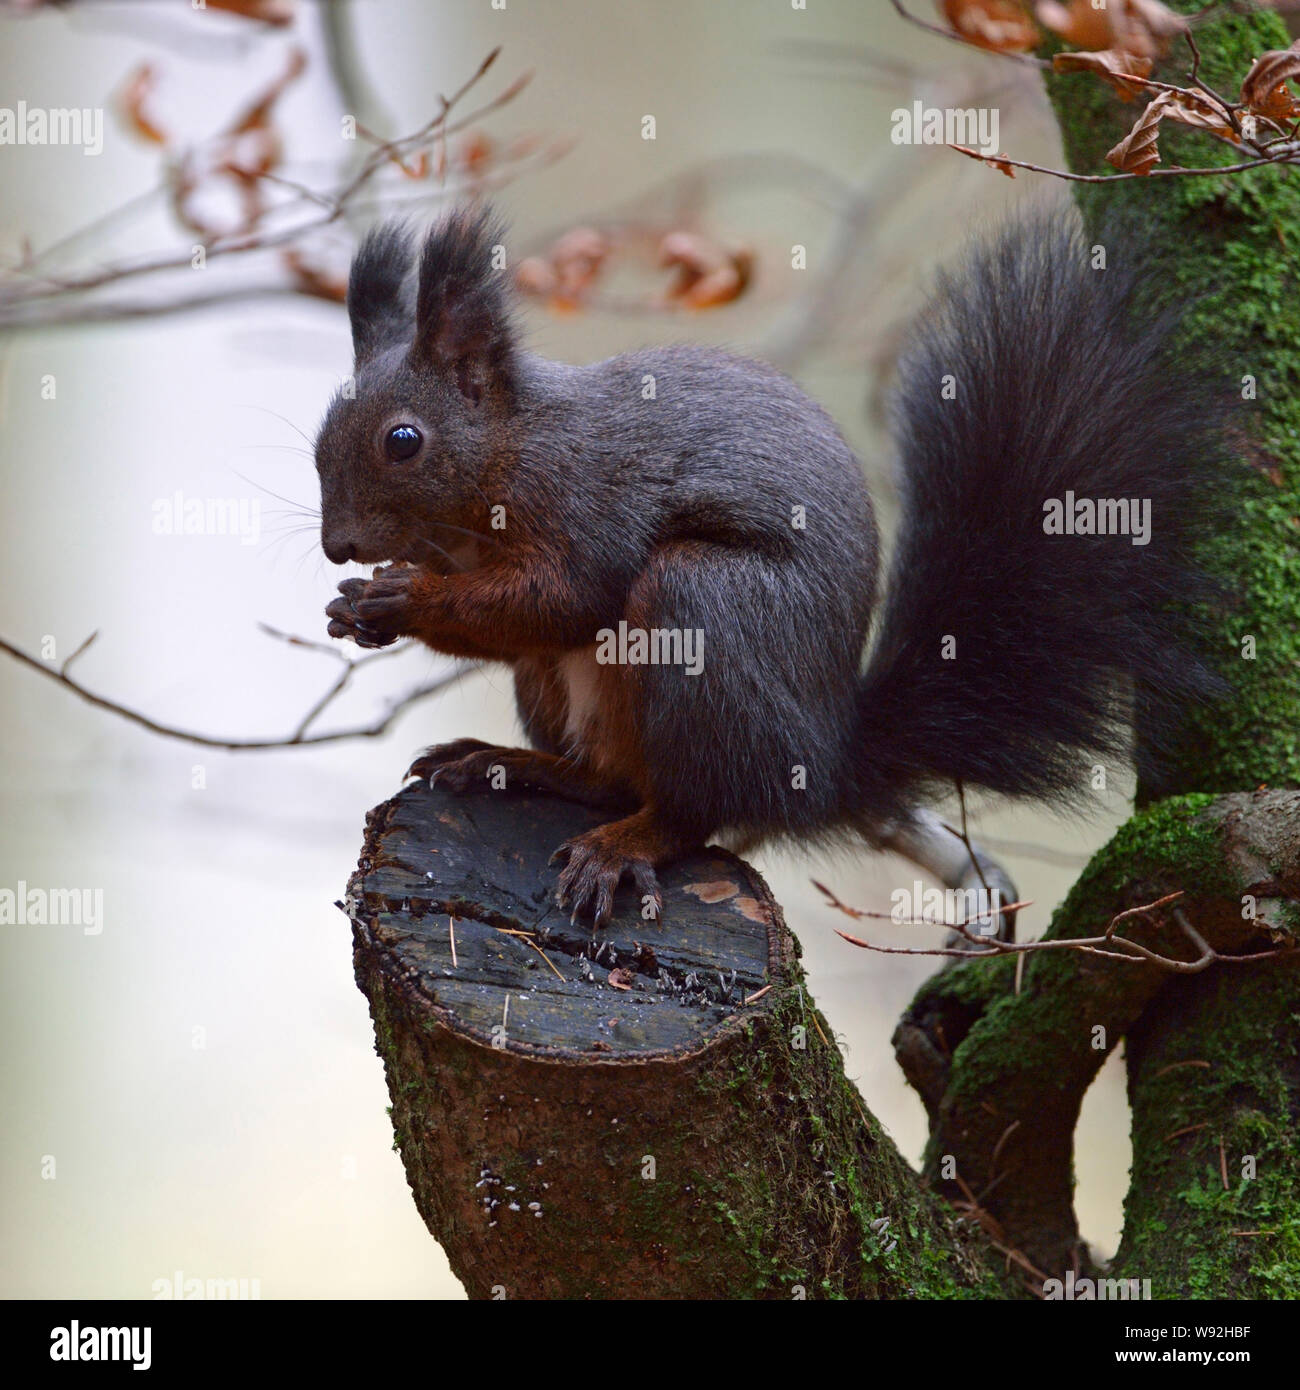 L'Écureuil roux / Europaeisches Eichhörnchen (Sciurus vulgaris ), assis dans un arbre, il se nourrit de graines, de la faune, de l'Europe. Banque D'Images